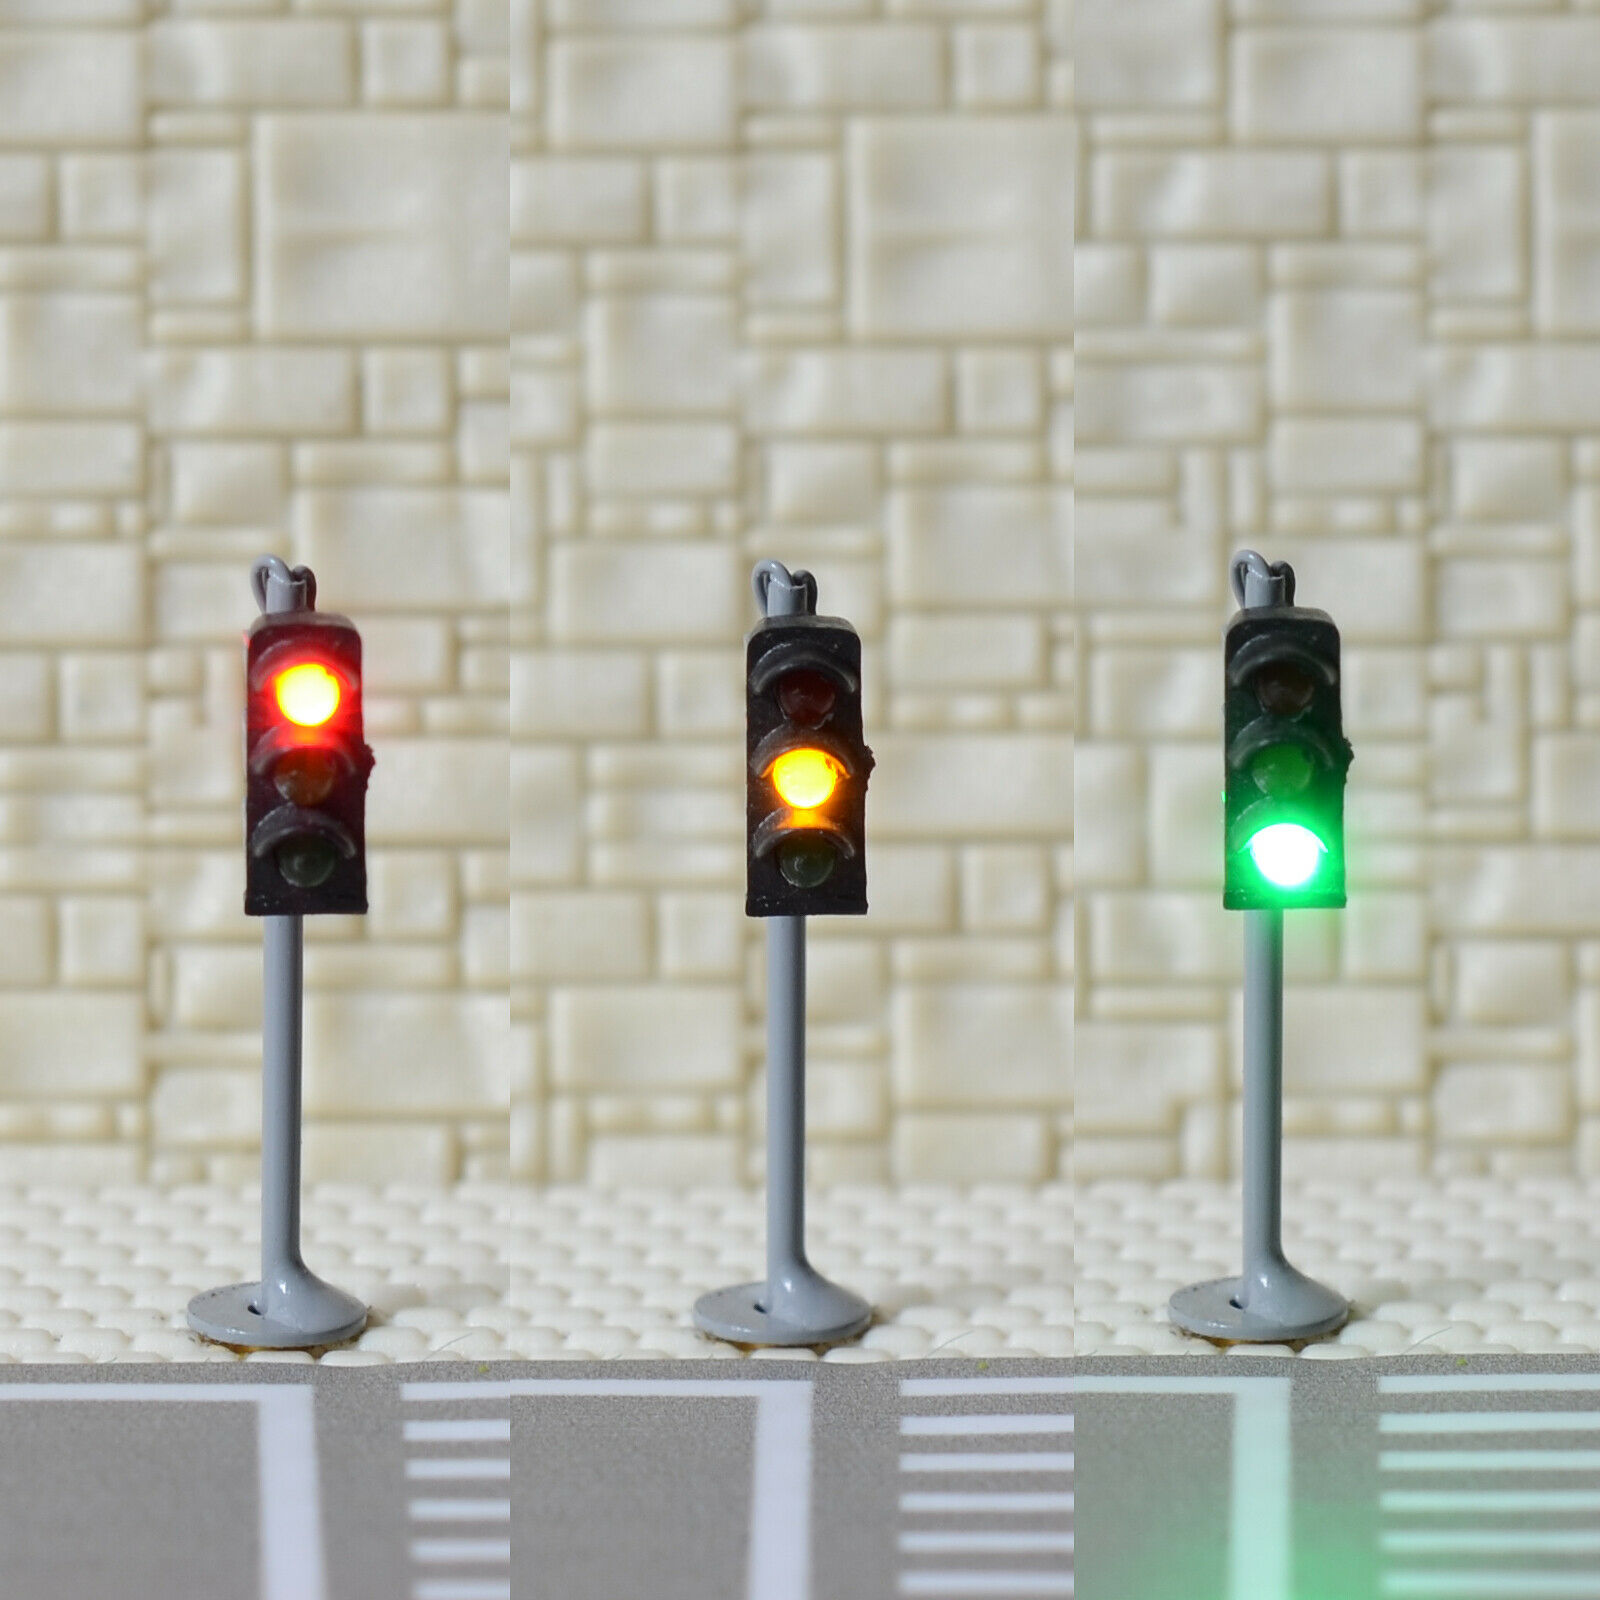 2 X Traffic Signal Light N Scale Model Railroad Crossing Walk Pedestrian #gr3n